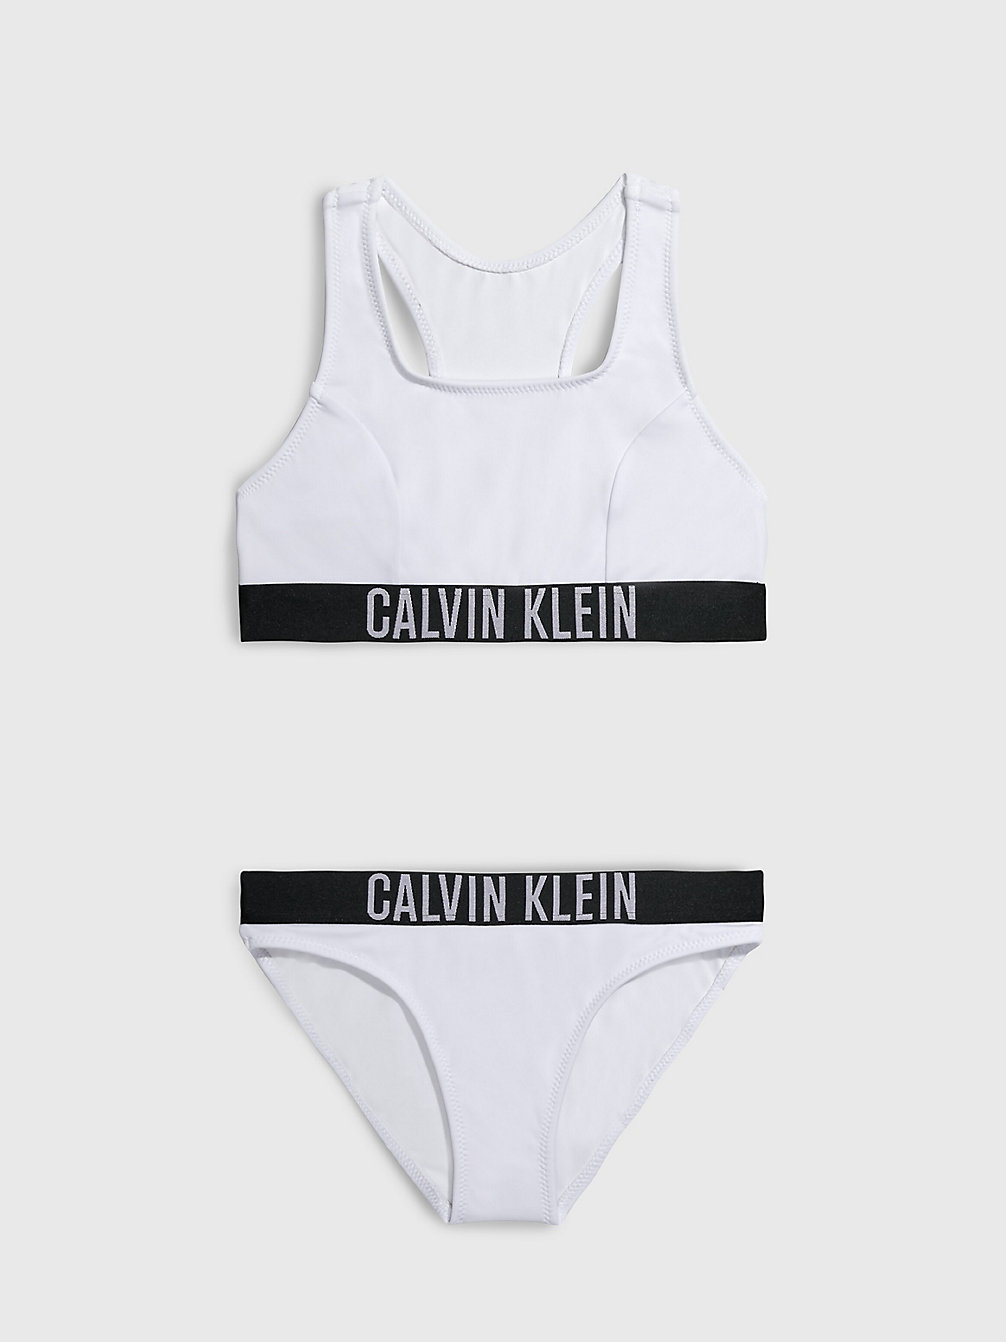 PVH CLASSIC WHITE > Bikini-Set Mit Bralette Für Mädchen - Intense Power > undefined girls - Calvin Klein